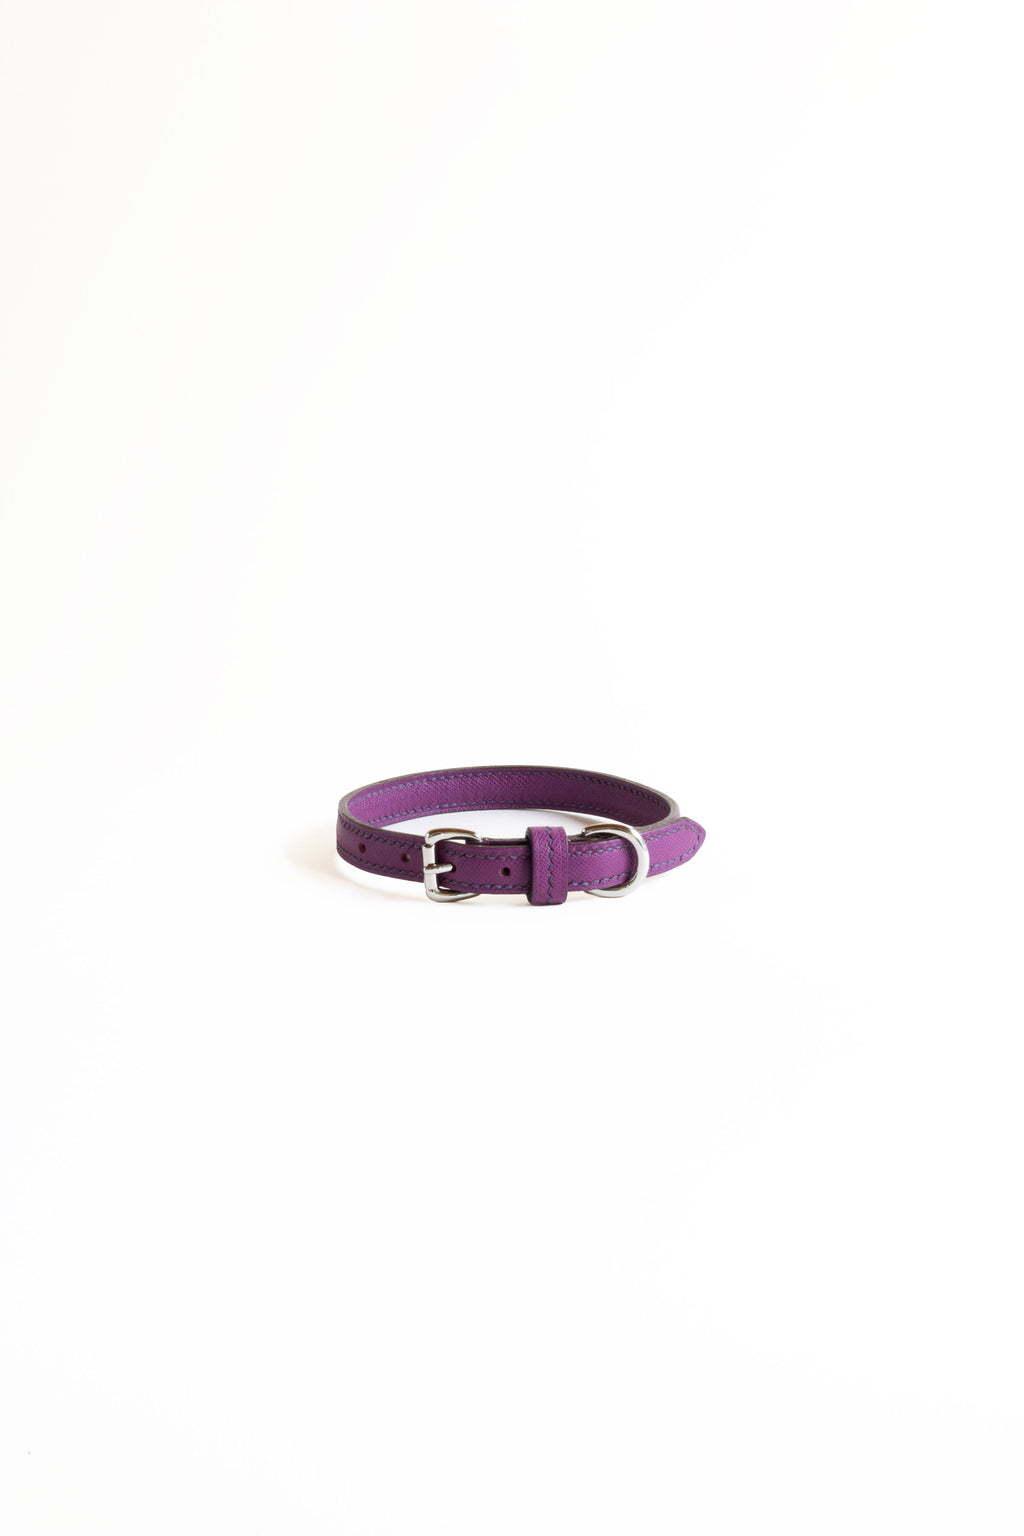 Bruna Andreoni Pet Collar Purple Saffiano S